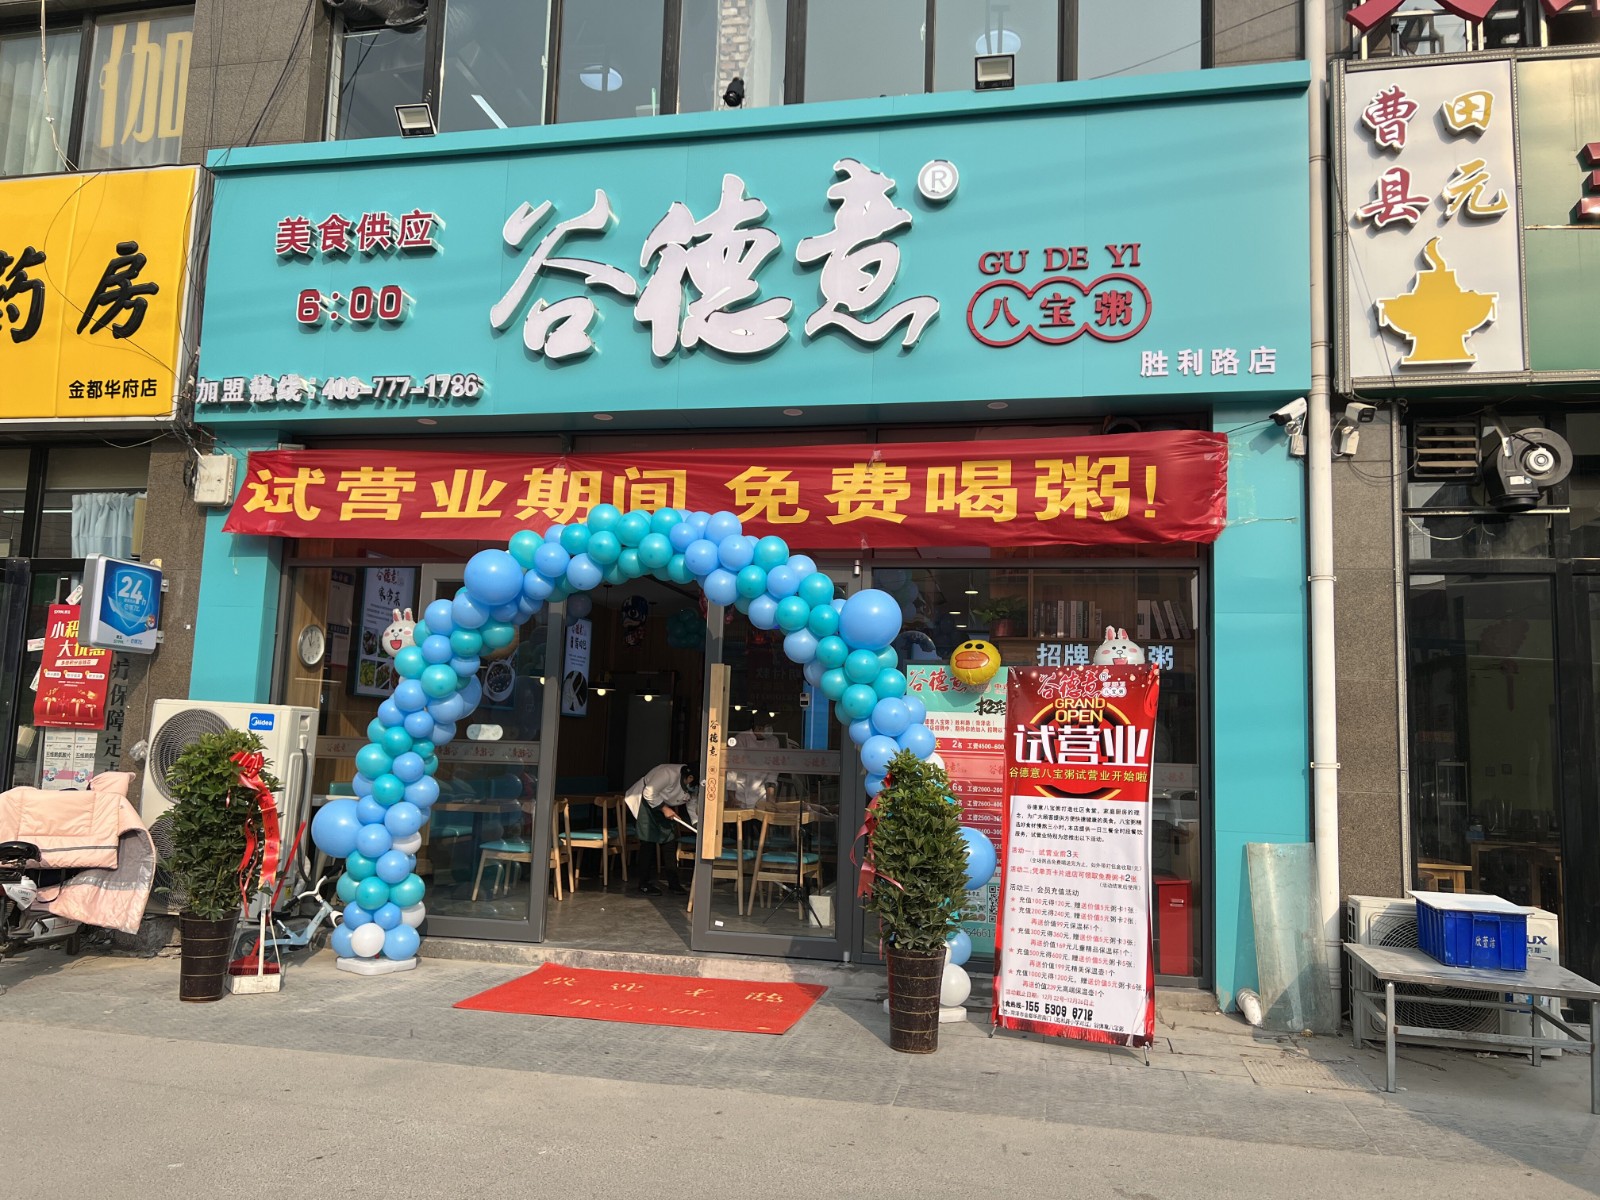 谷德意八宝粥中式快餐菏泽胜利路加盟店开业了